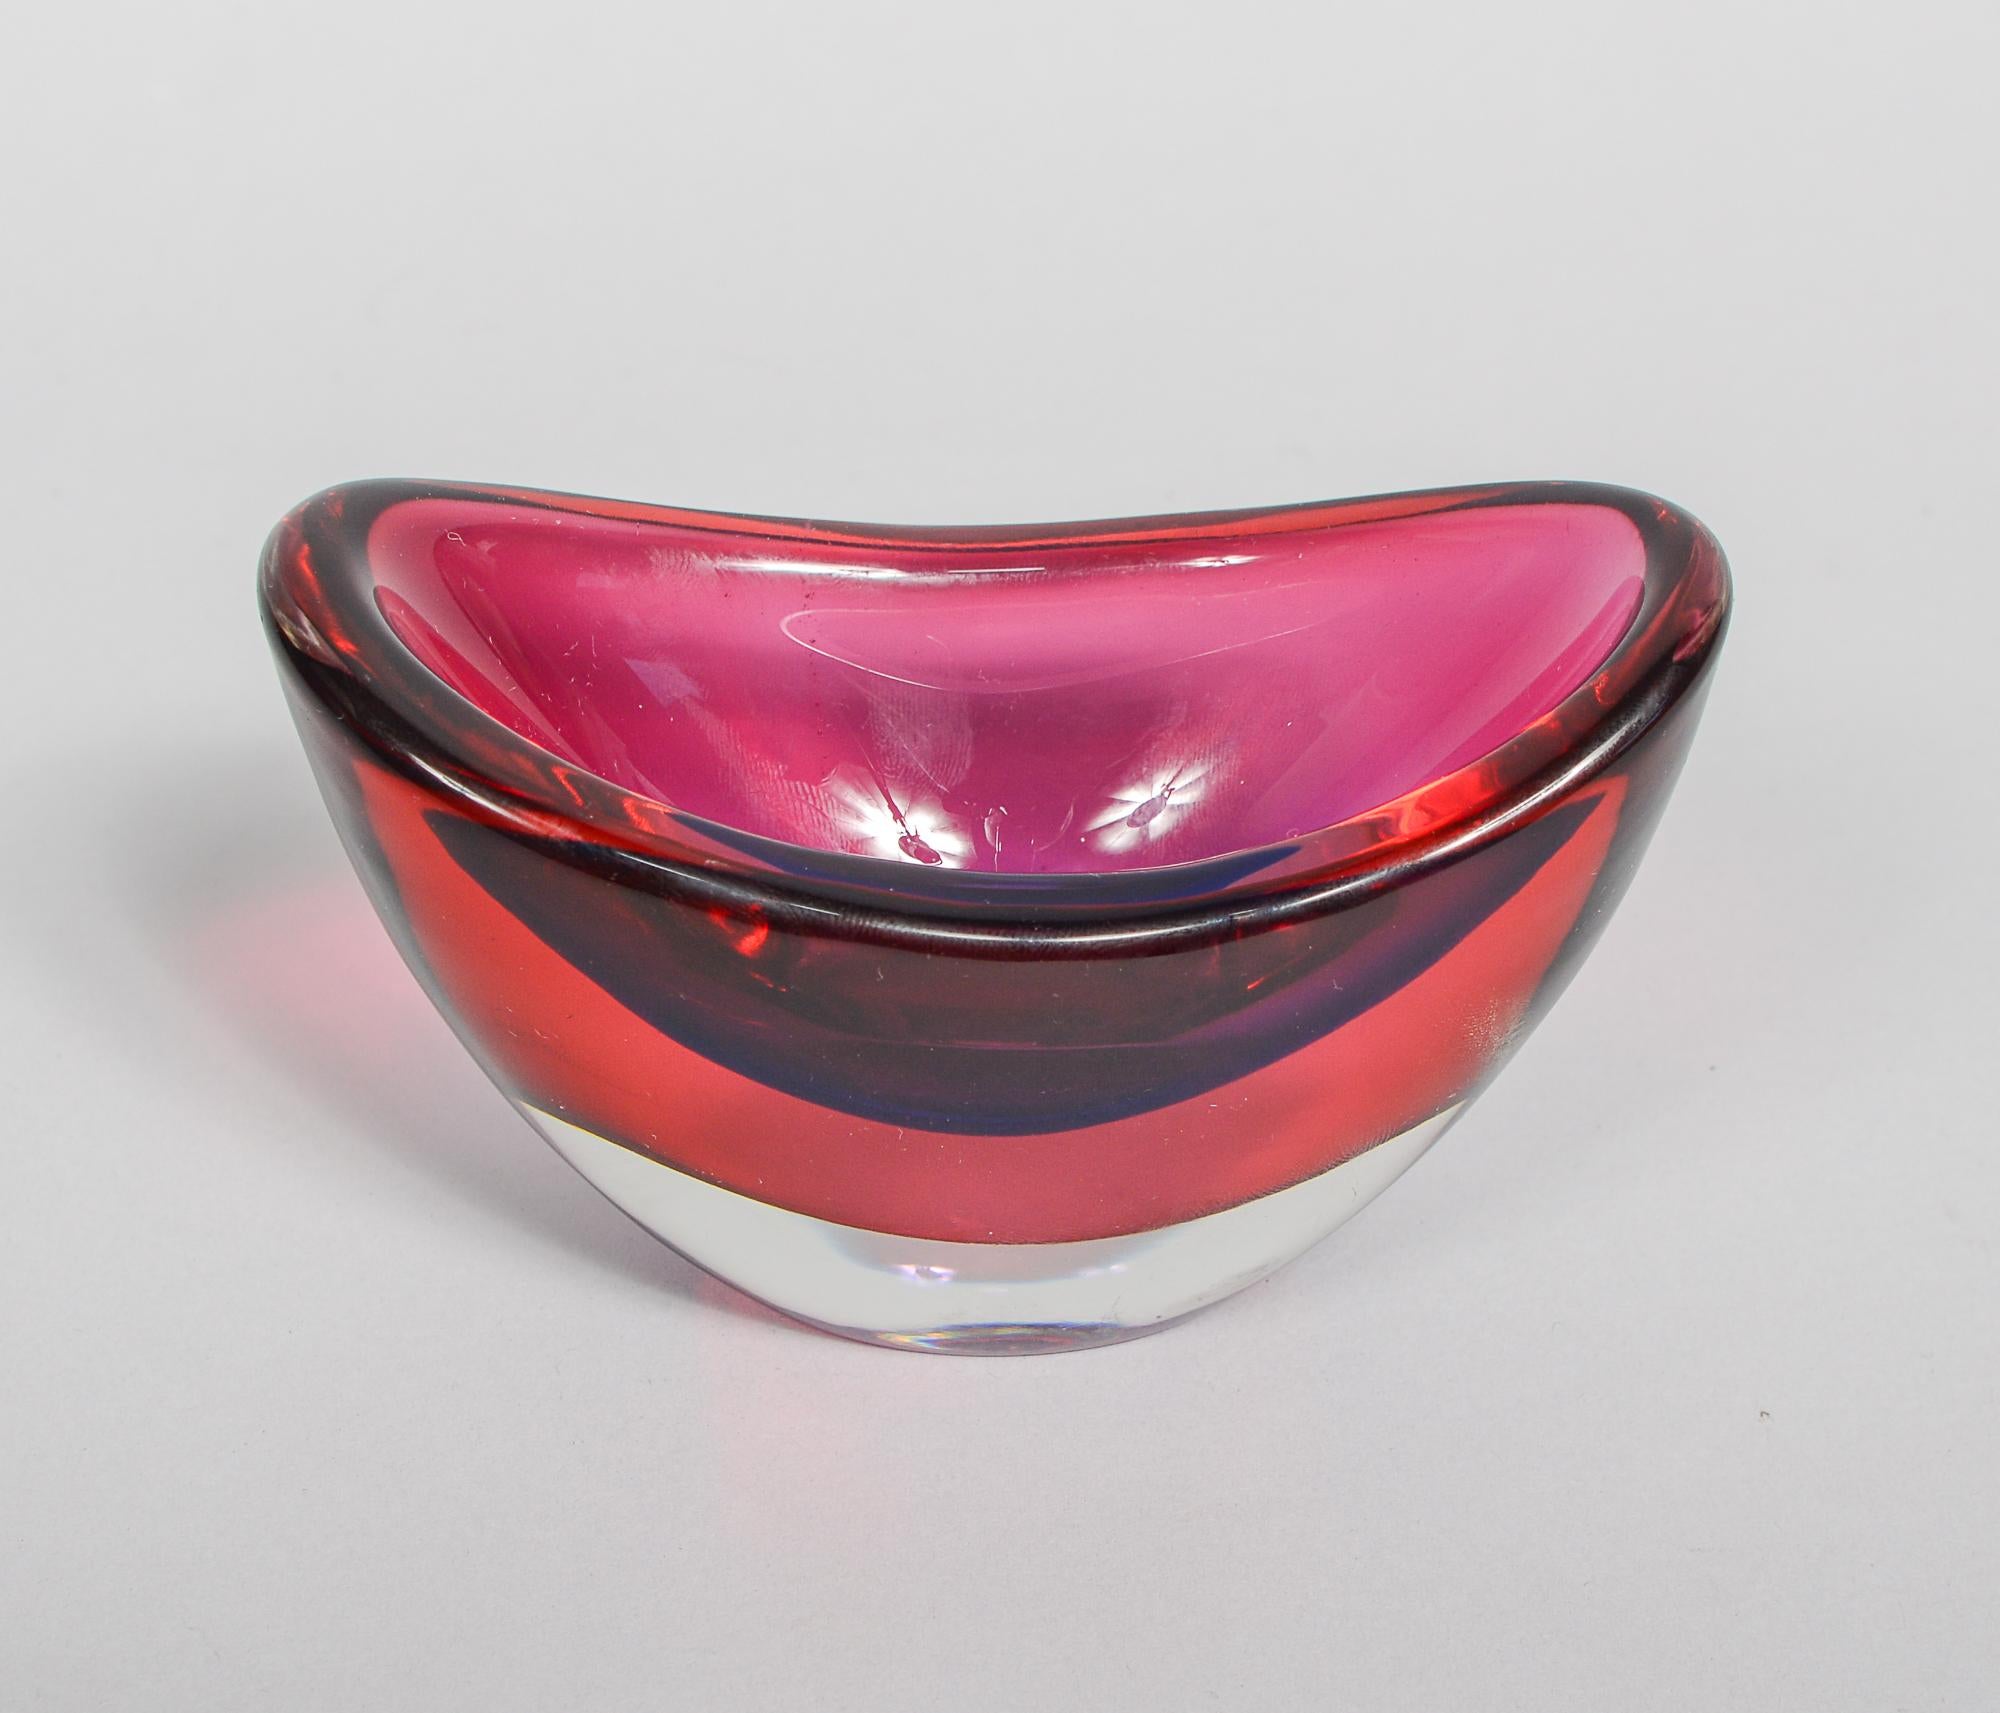 Petit vase sommerso de Murano conçu par Flavio Poli. Le vase est clair, rouge et violet, une des plus belles combinaisons de couleurs de cette série.